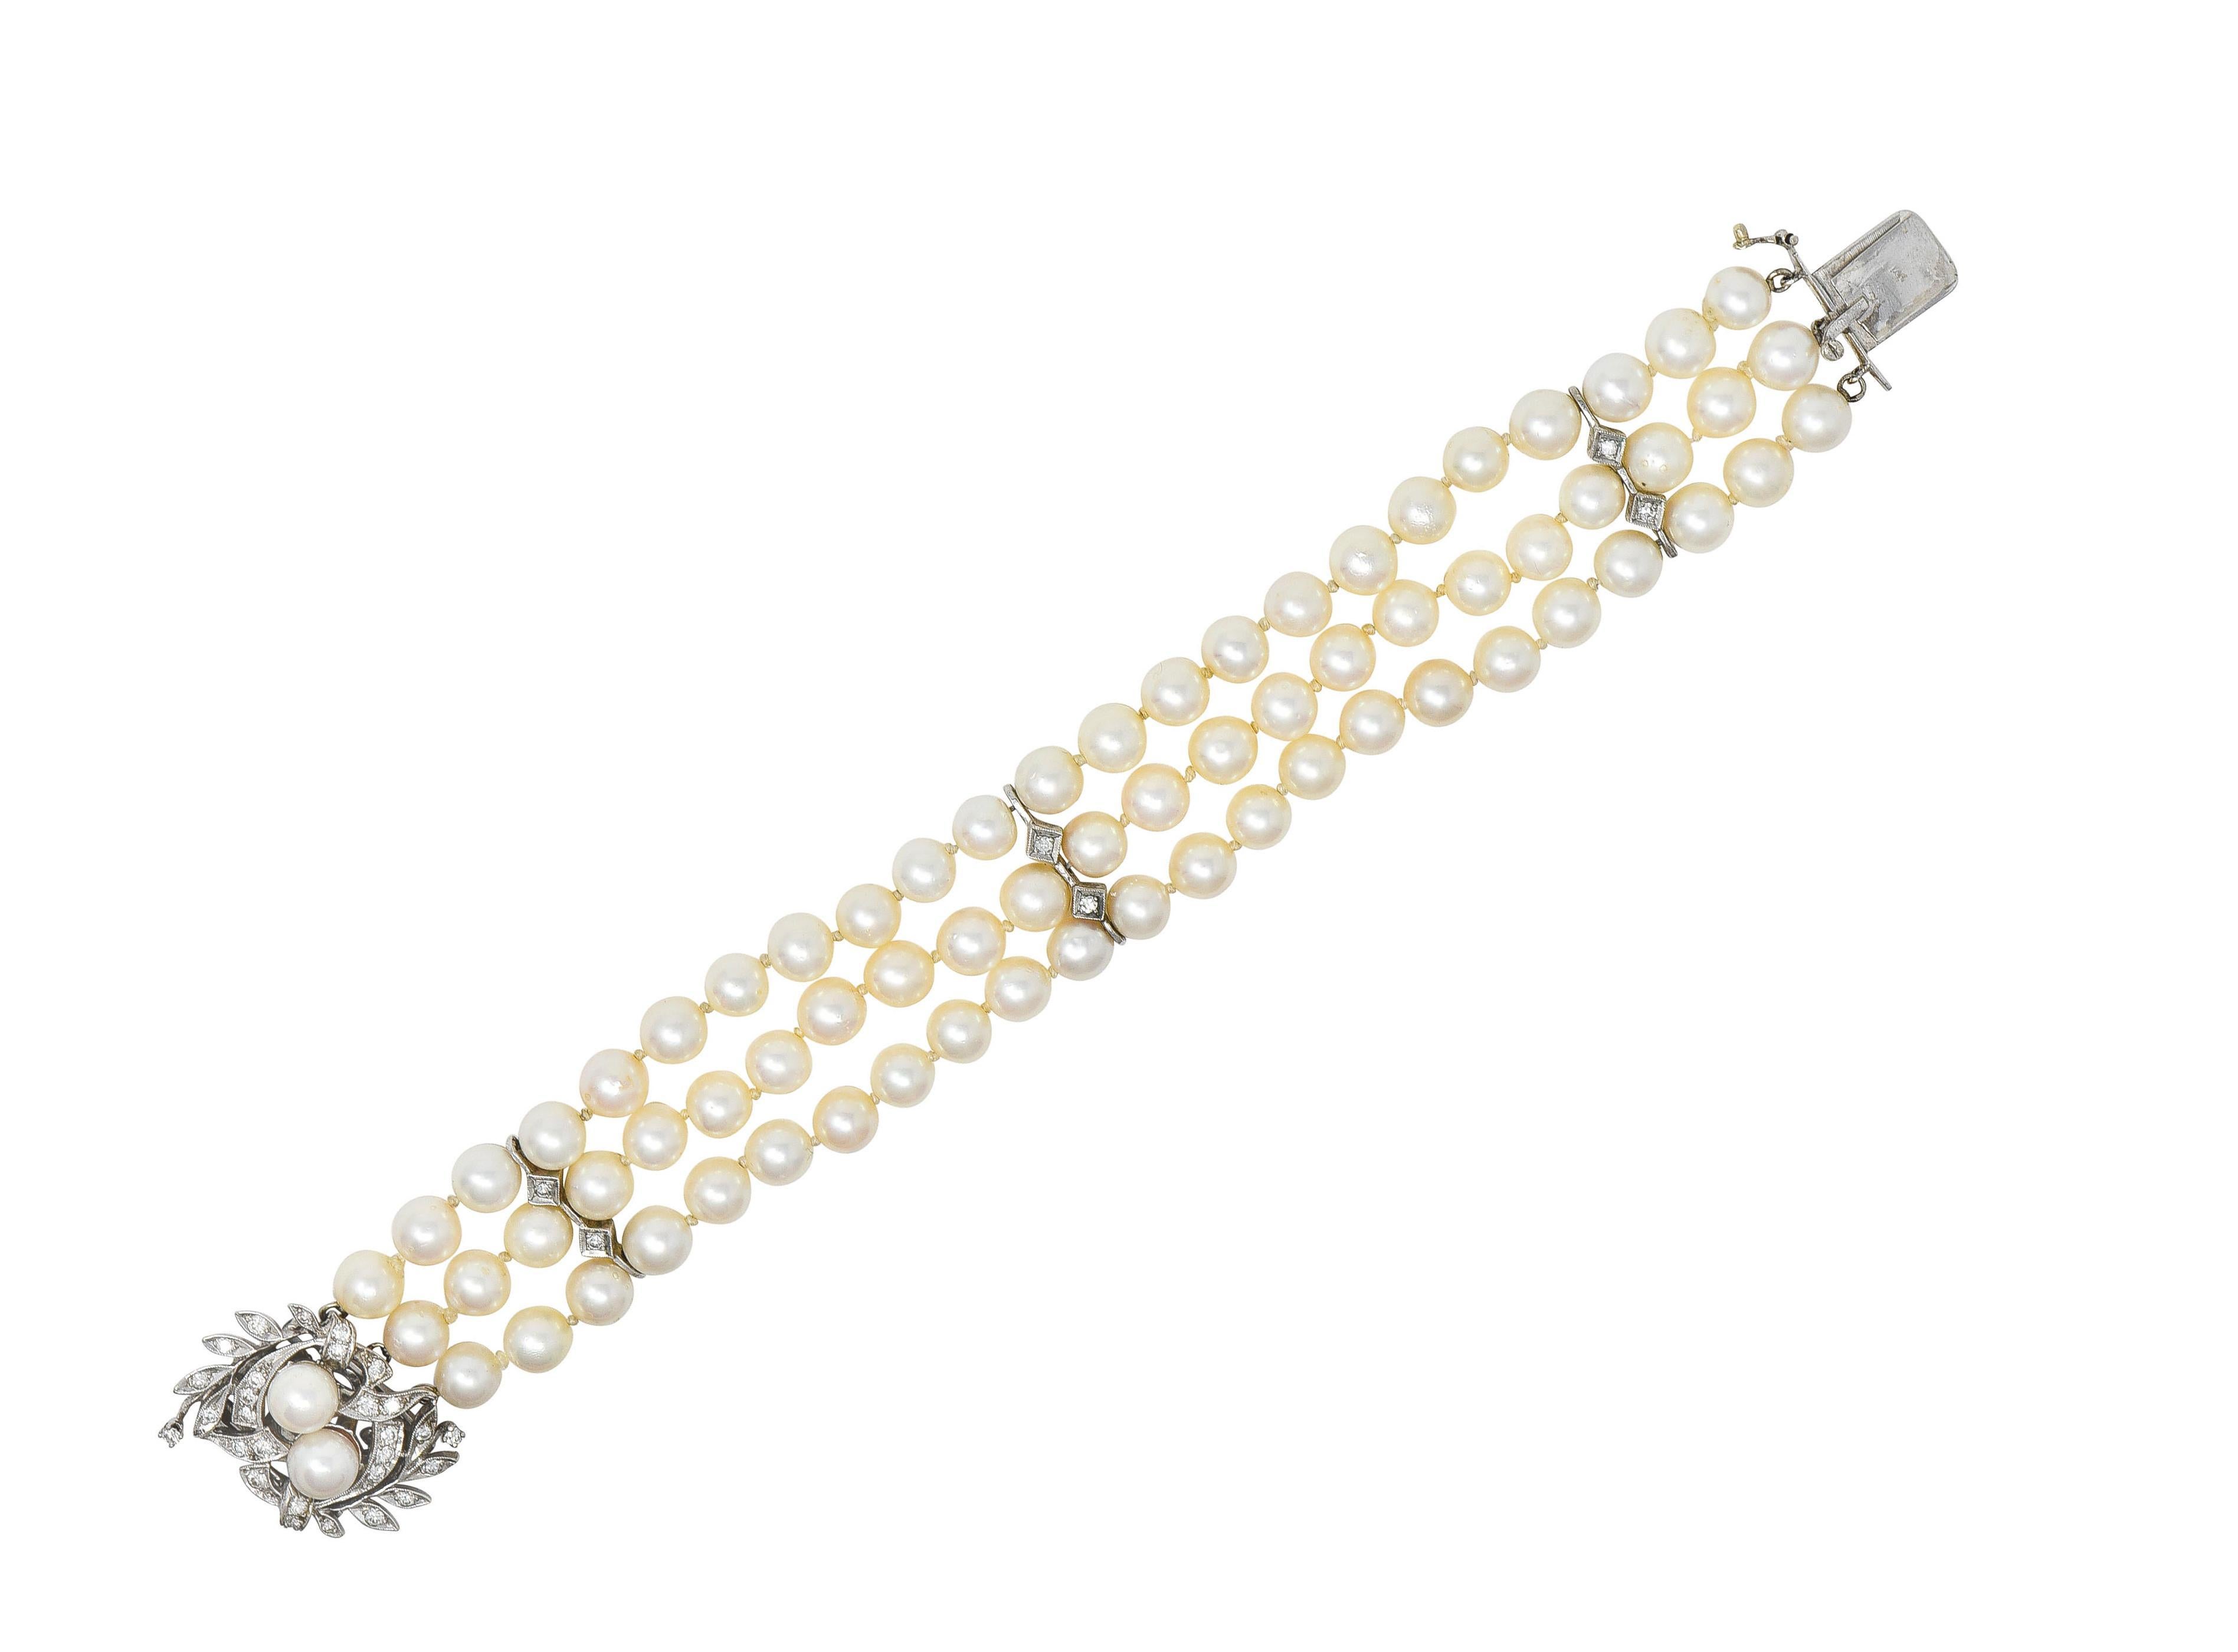 Bestehend aus drei Strängen runder Perlen mit Blattwerk- und Diamantenmotiven aus Weißgold 
Die Perlen sind zwischen 6,0 und 7,0 mm groß, creme- bis rosafarben, stark schillernd und glänzend.
Die Station mit Blattmotiv dient gleichzeitig als